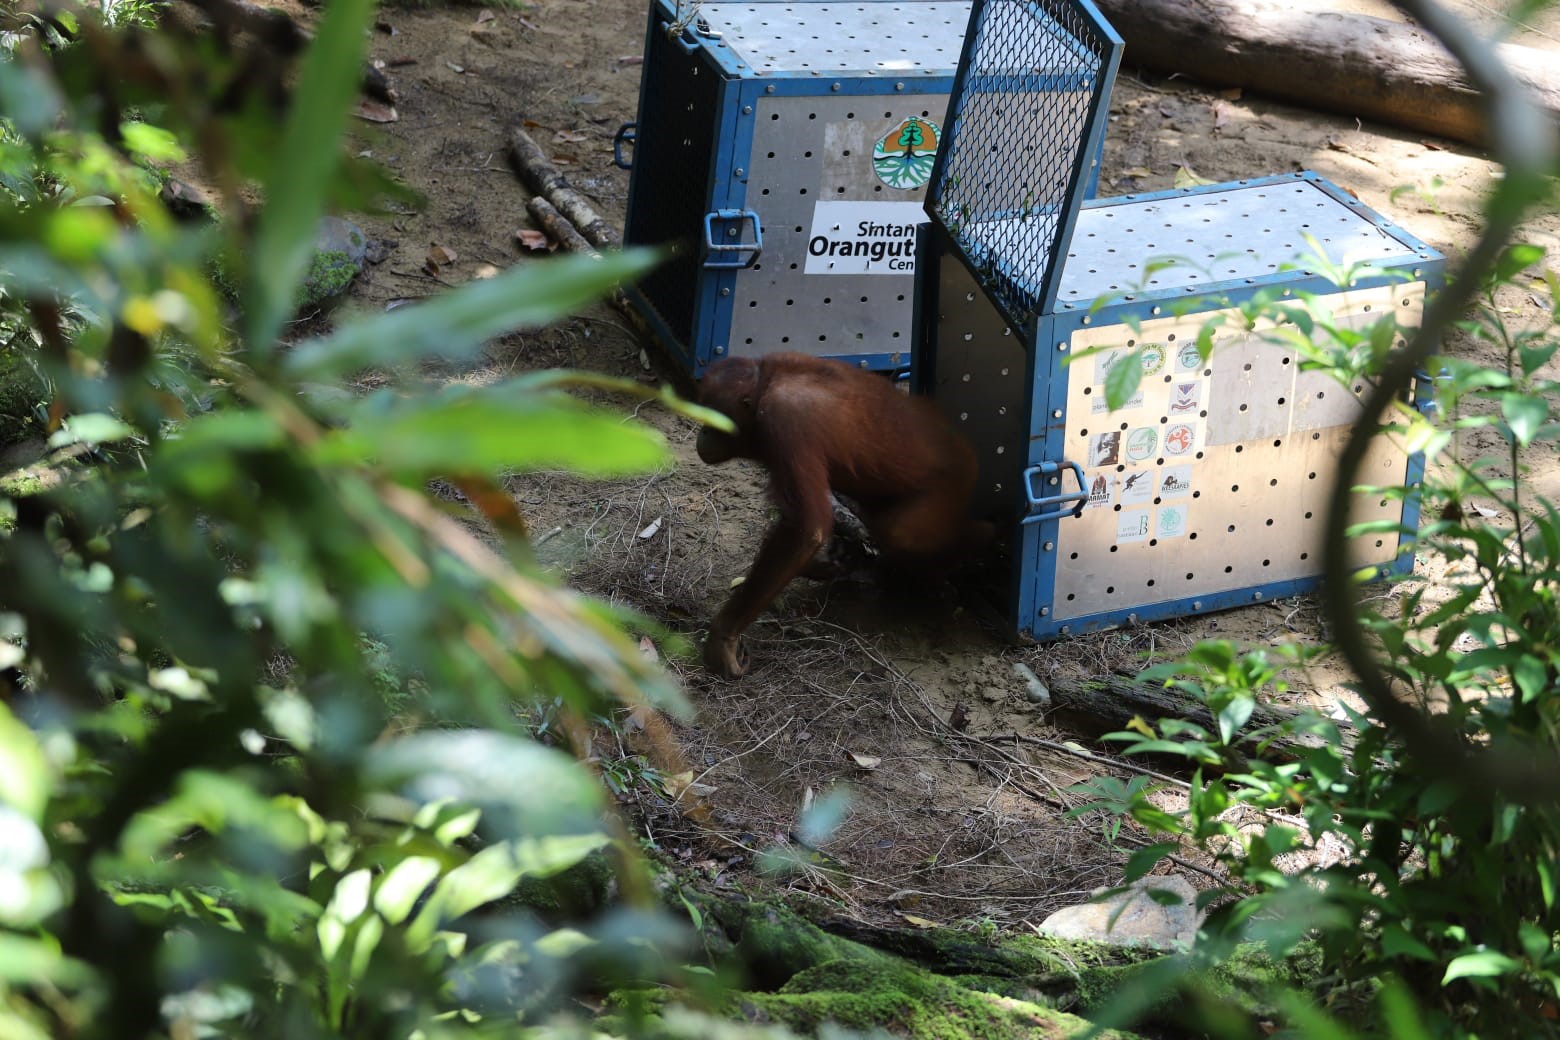 Pelepasan orangutan di Balai Besar Taman Nasional Betung Kerihun dan Danau Sentarum